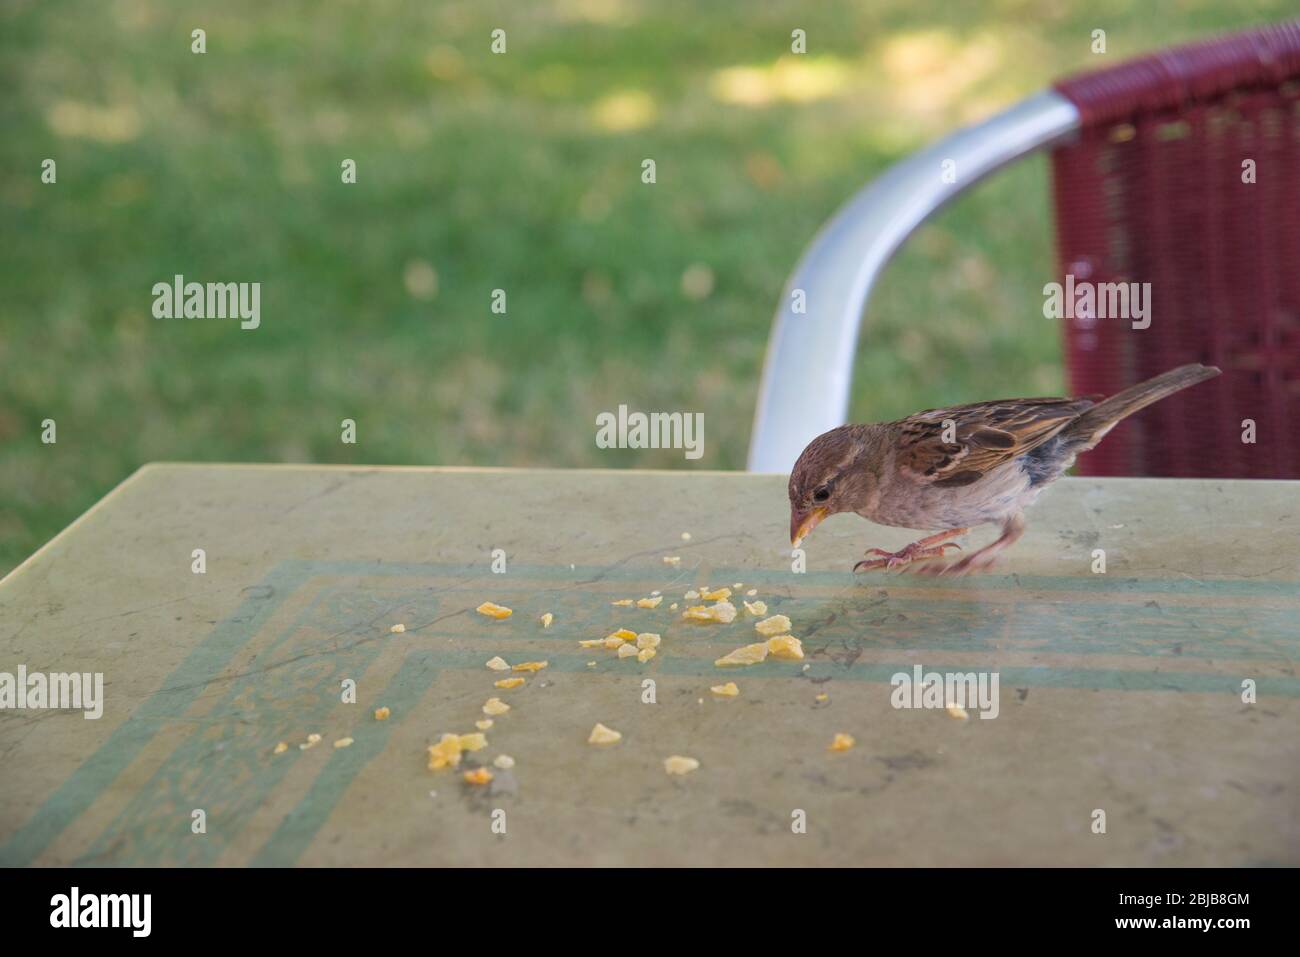 Nourrissant les oiseaux : manger des crumbles sur la table d'une terrasse. Banque D'Images